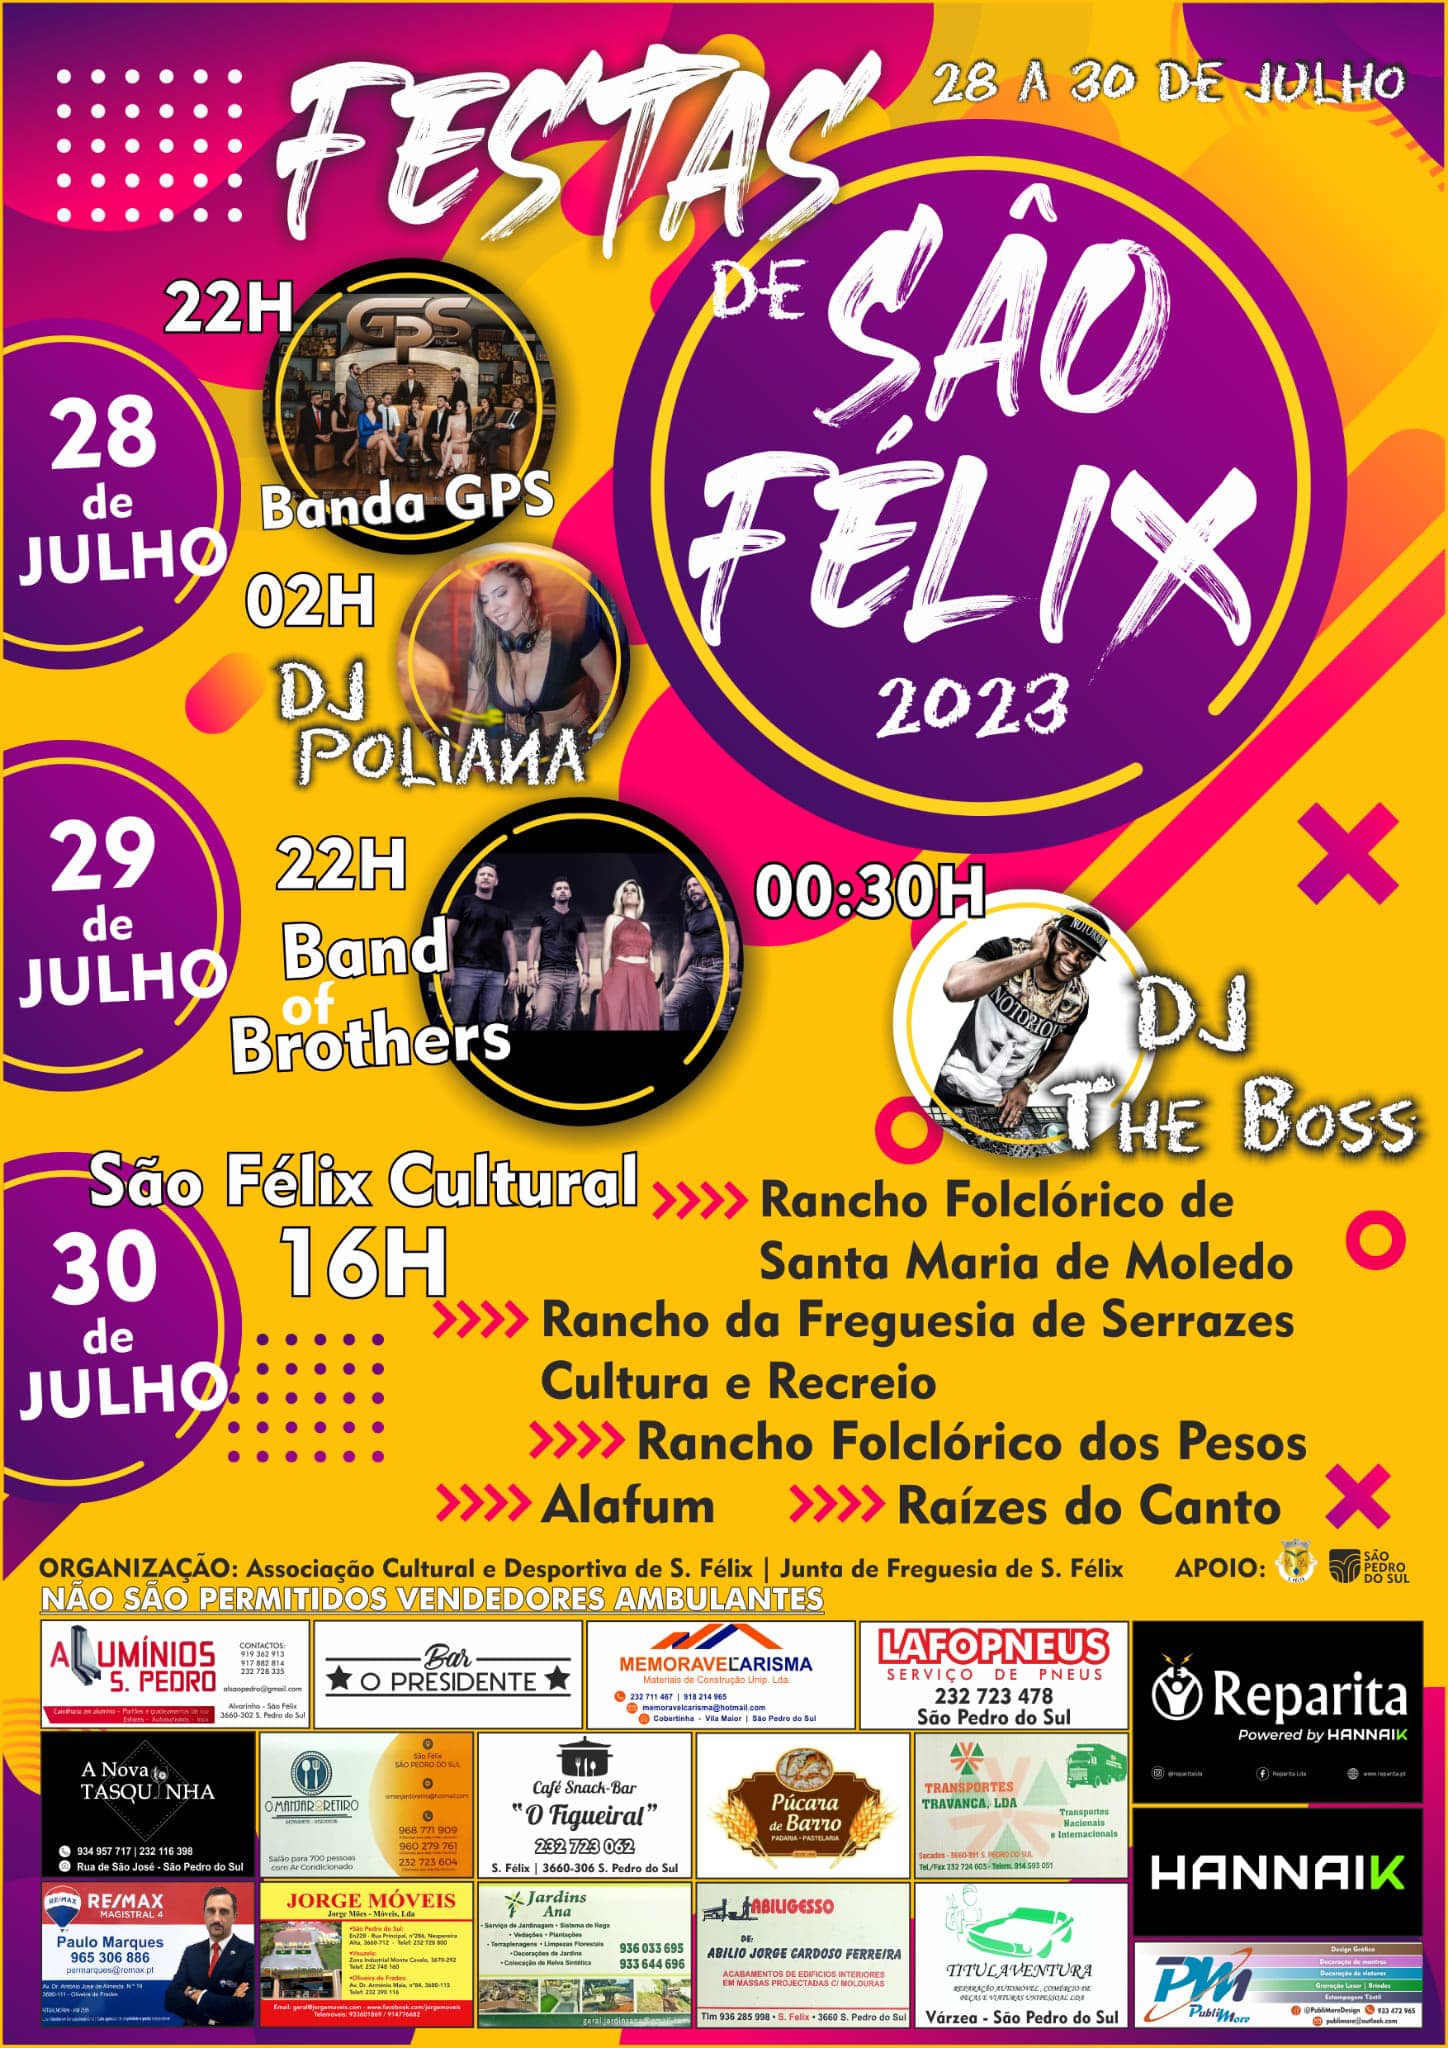 You are currently viewing Festas de São Felix – 28 a 30 de julho